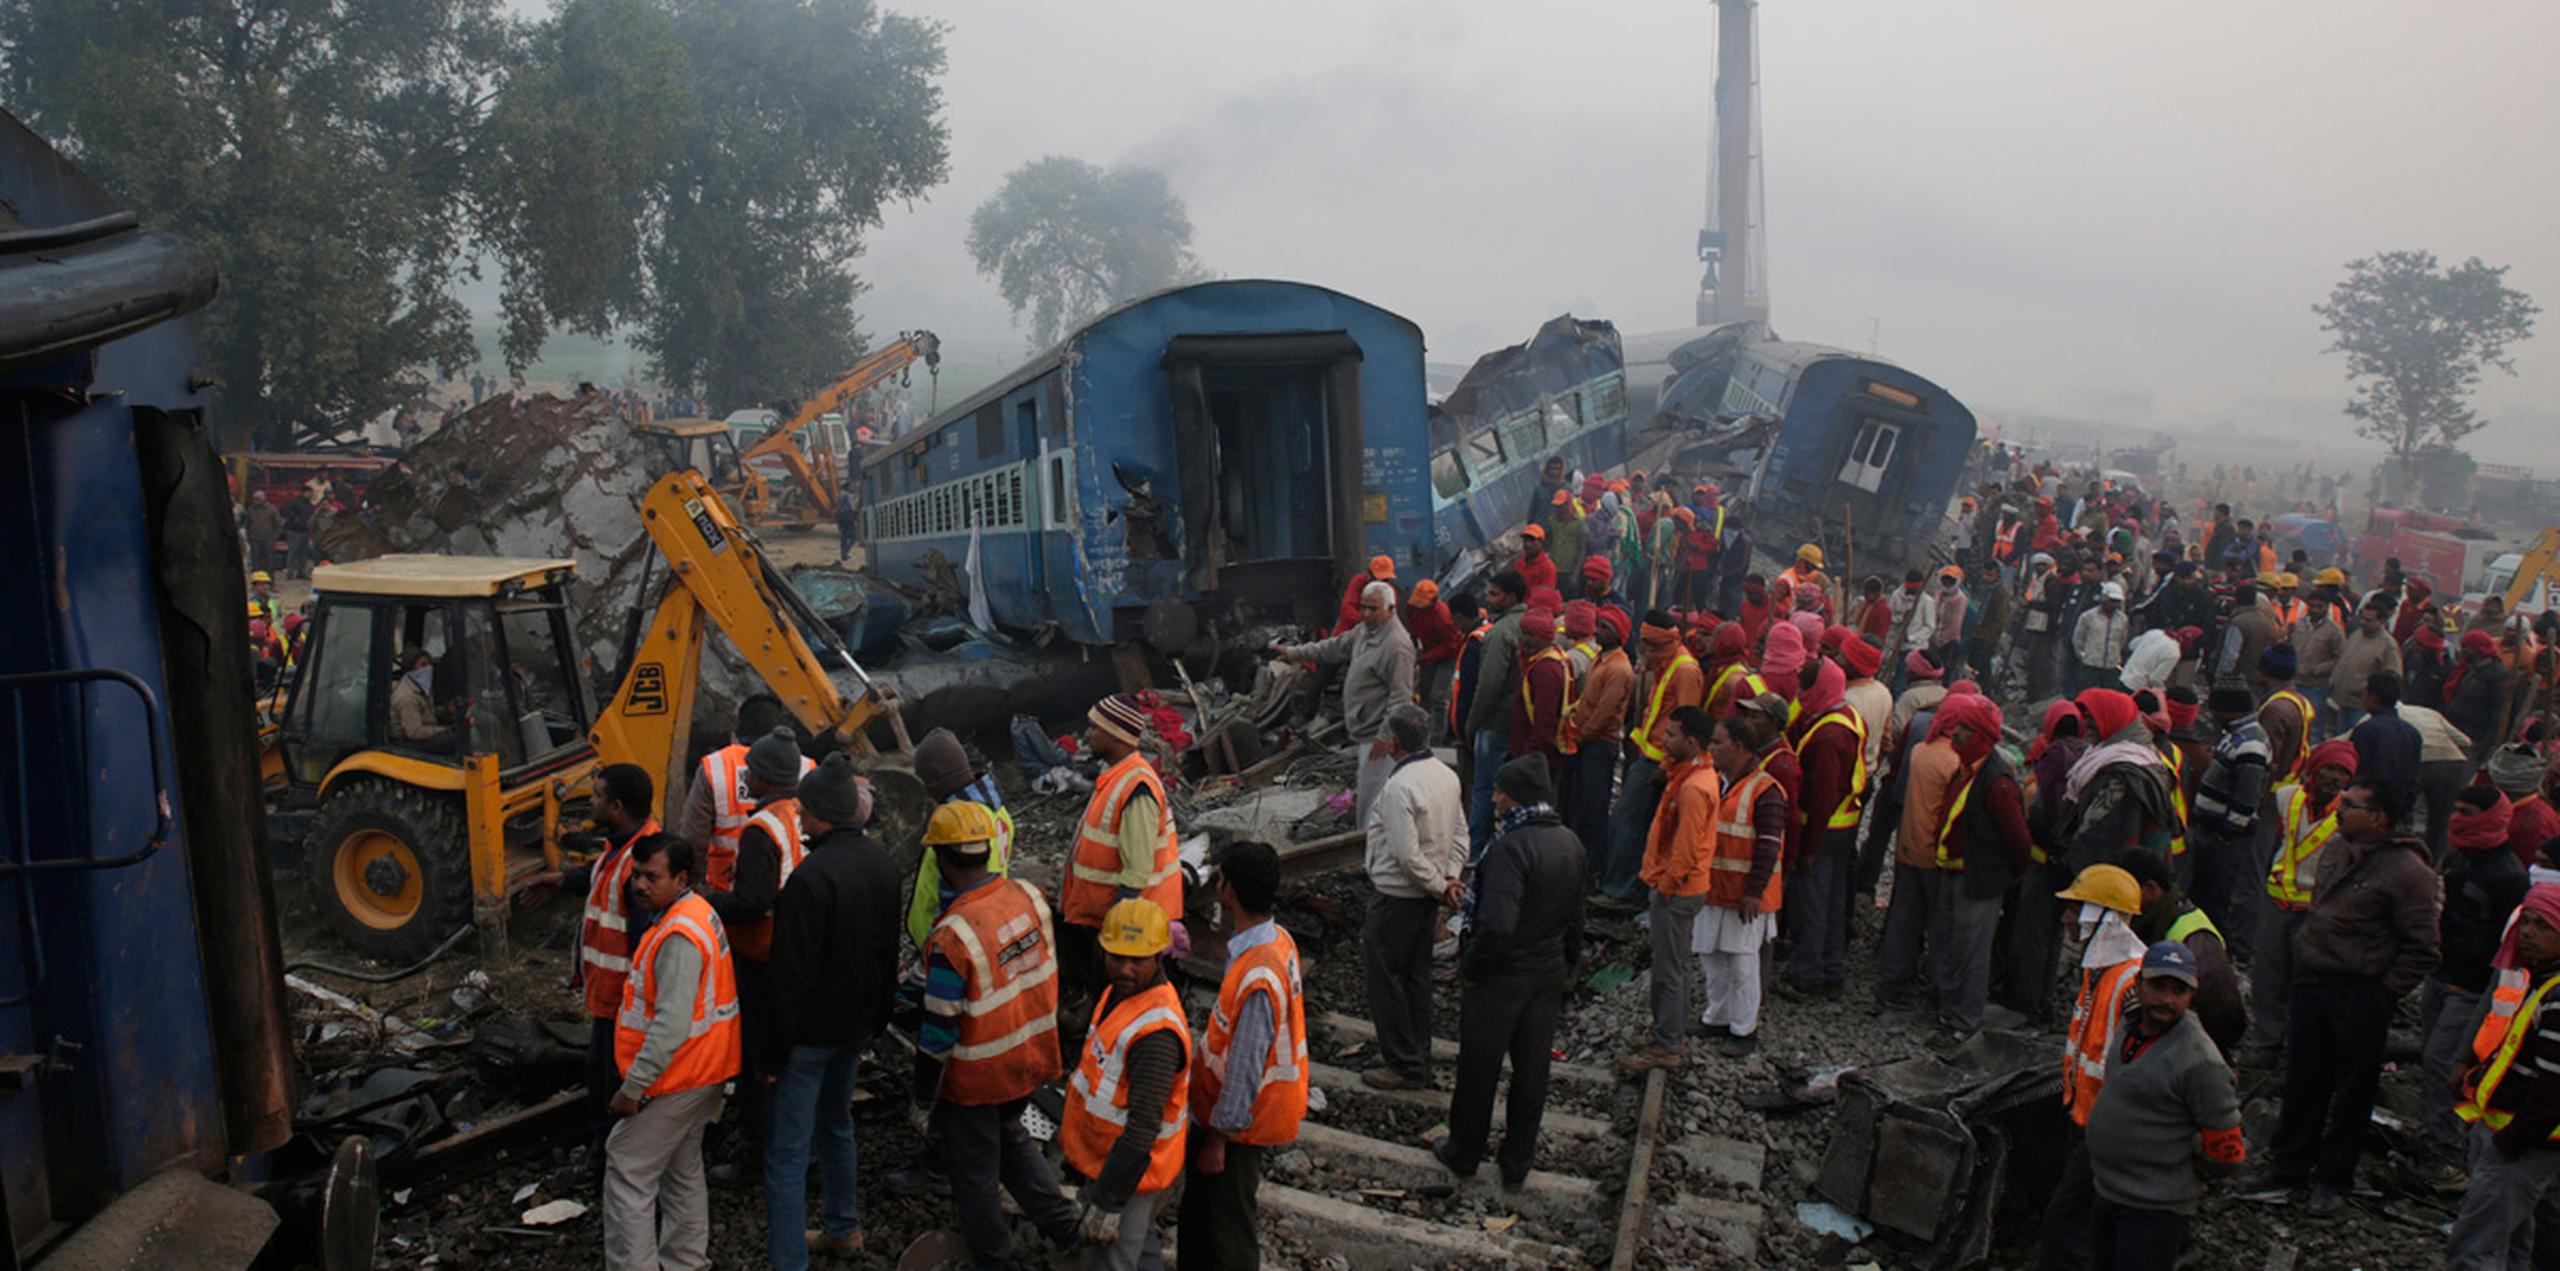 Rescatistas, soldados y miembros de la agencia india de gestión de desastres trabajaron toda la noche para sacar a la gente atrapada entre los restos retorcidos y volcados de los vagones.  (AP)